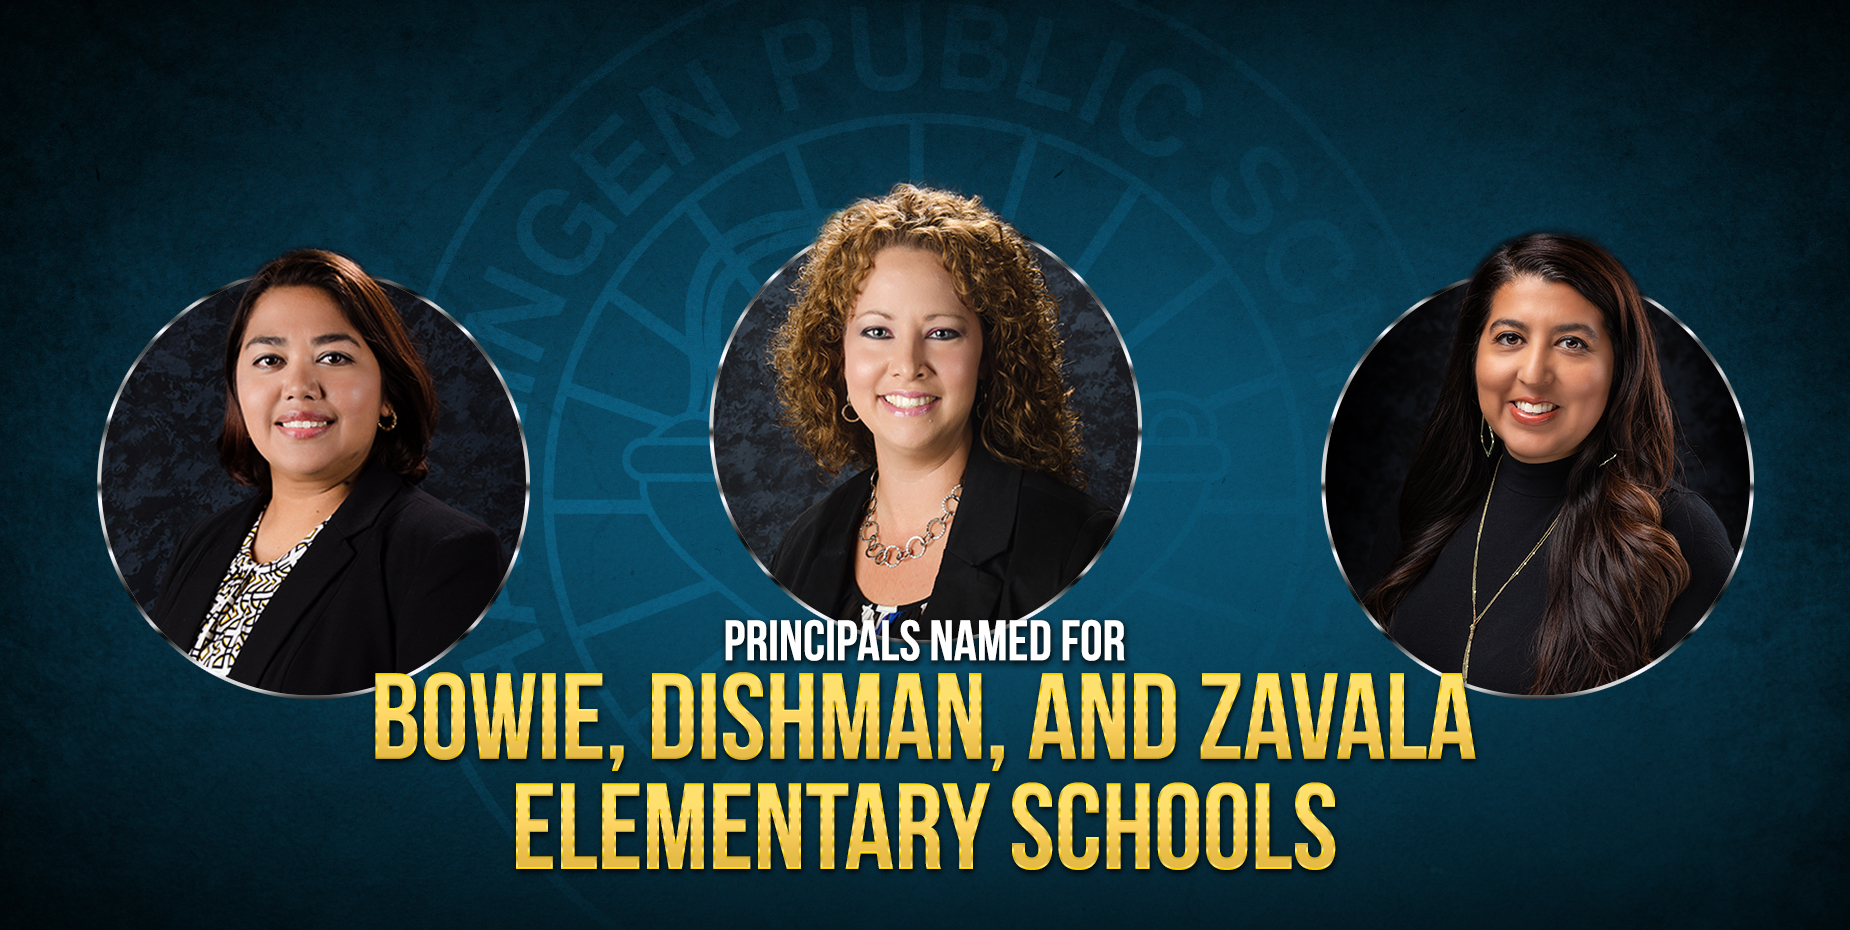 Han sido nombradas las directoras para las escuelas primarias Bowie, Dishman y Zavala.